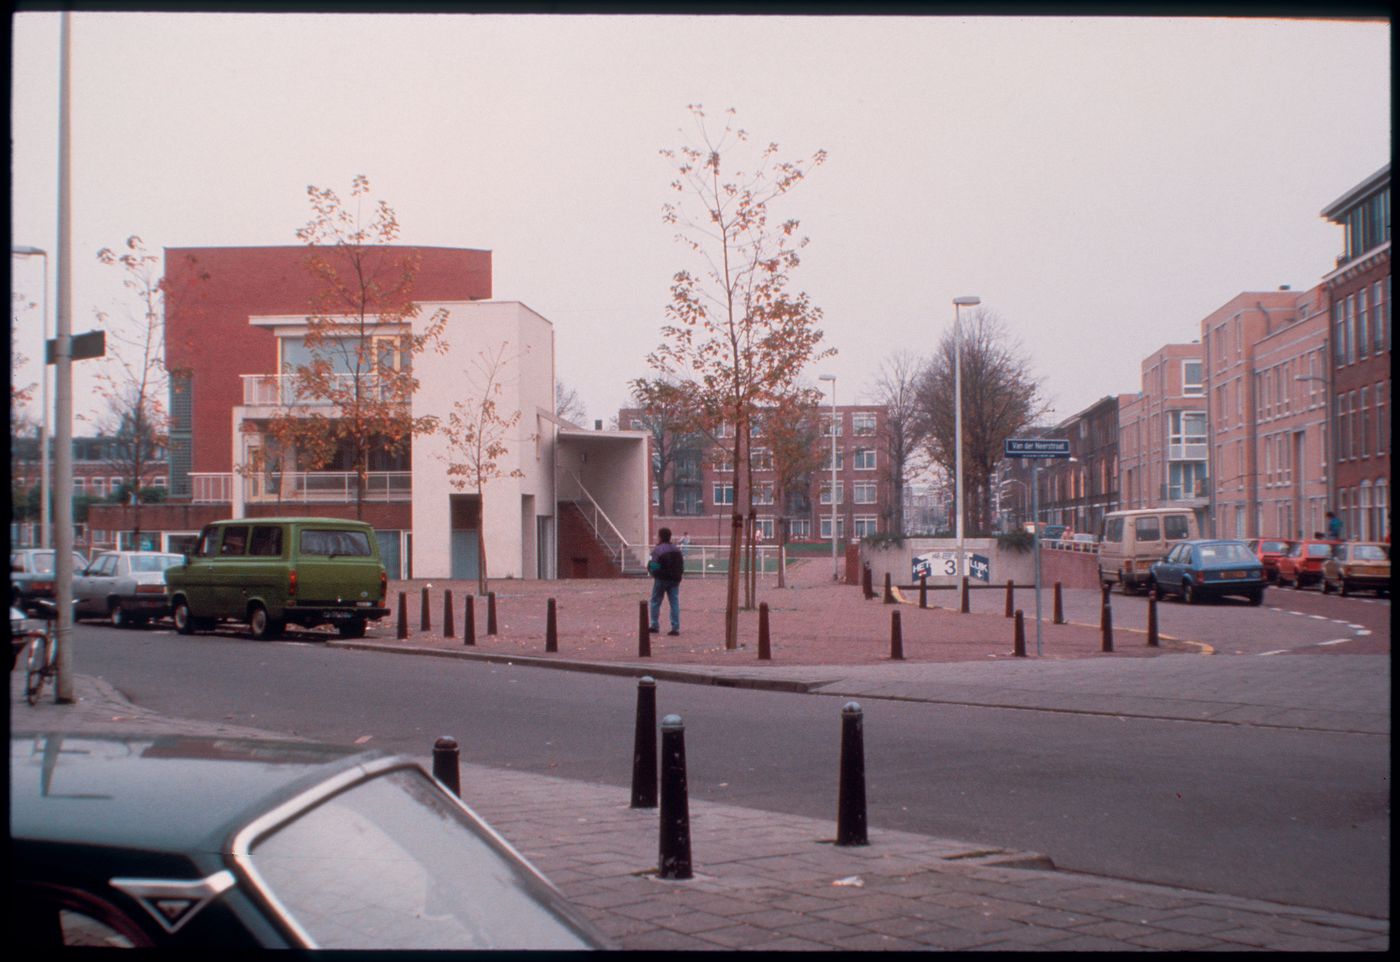 Exterior view of Duas habitações e duas lojas [Housing and shopping complex, Schilderswijk], The Hague, The Netherlands